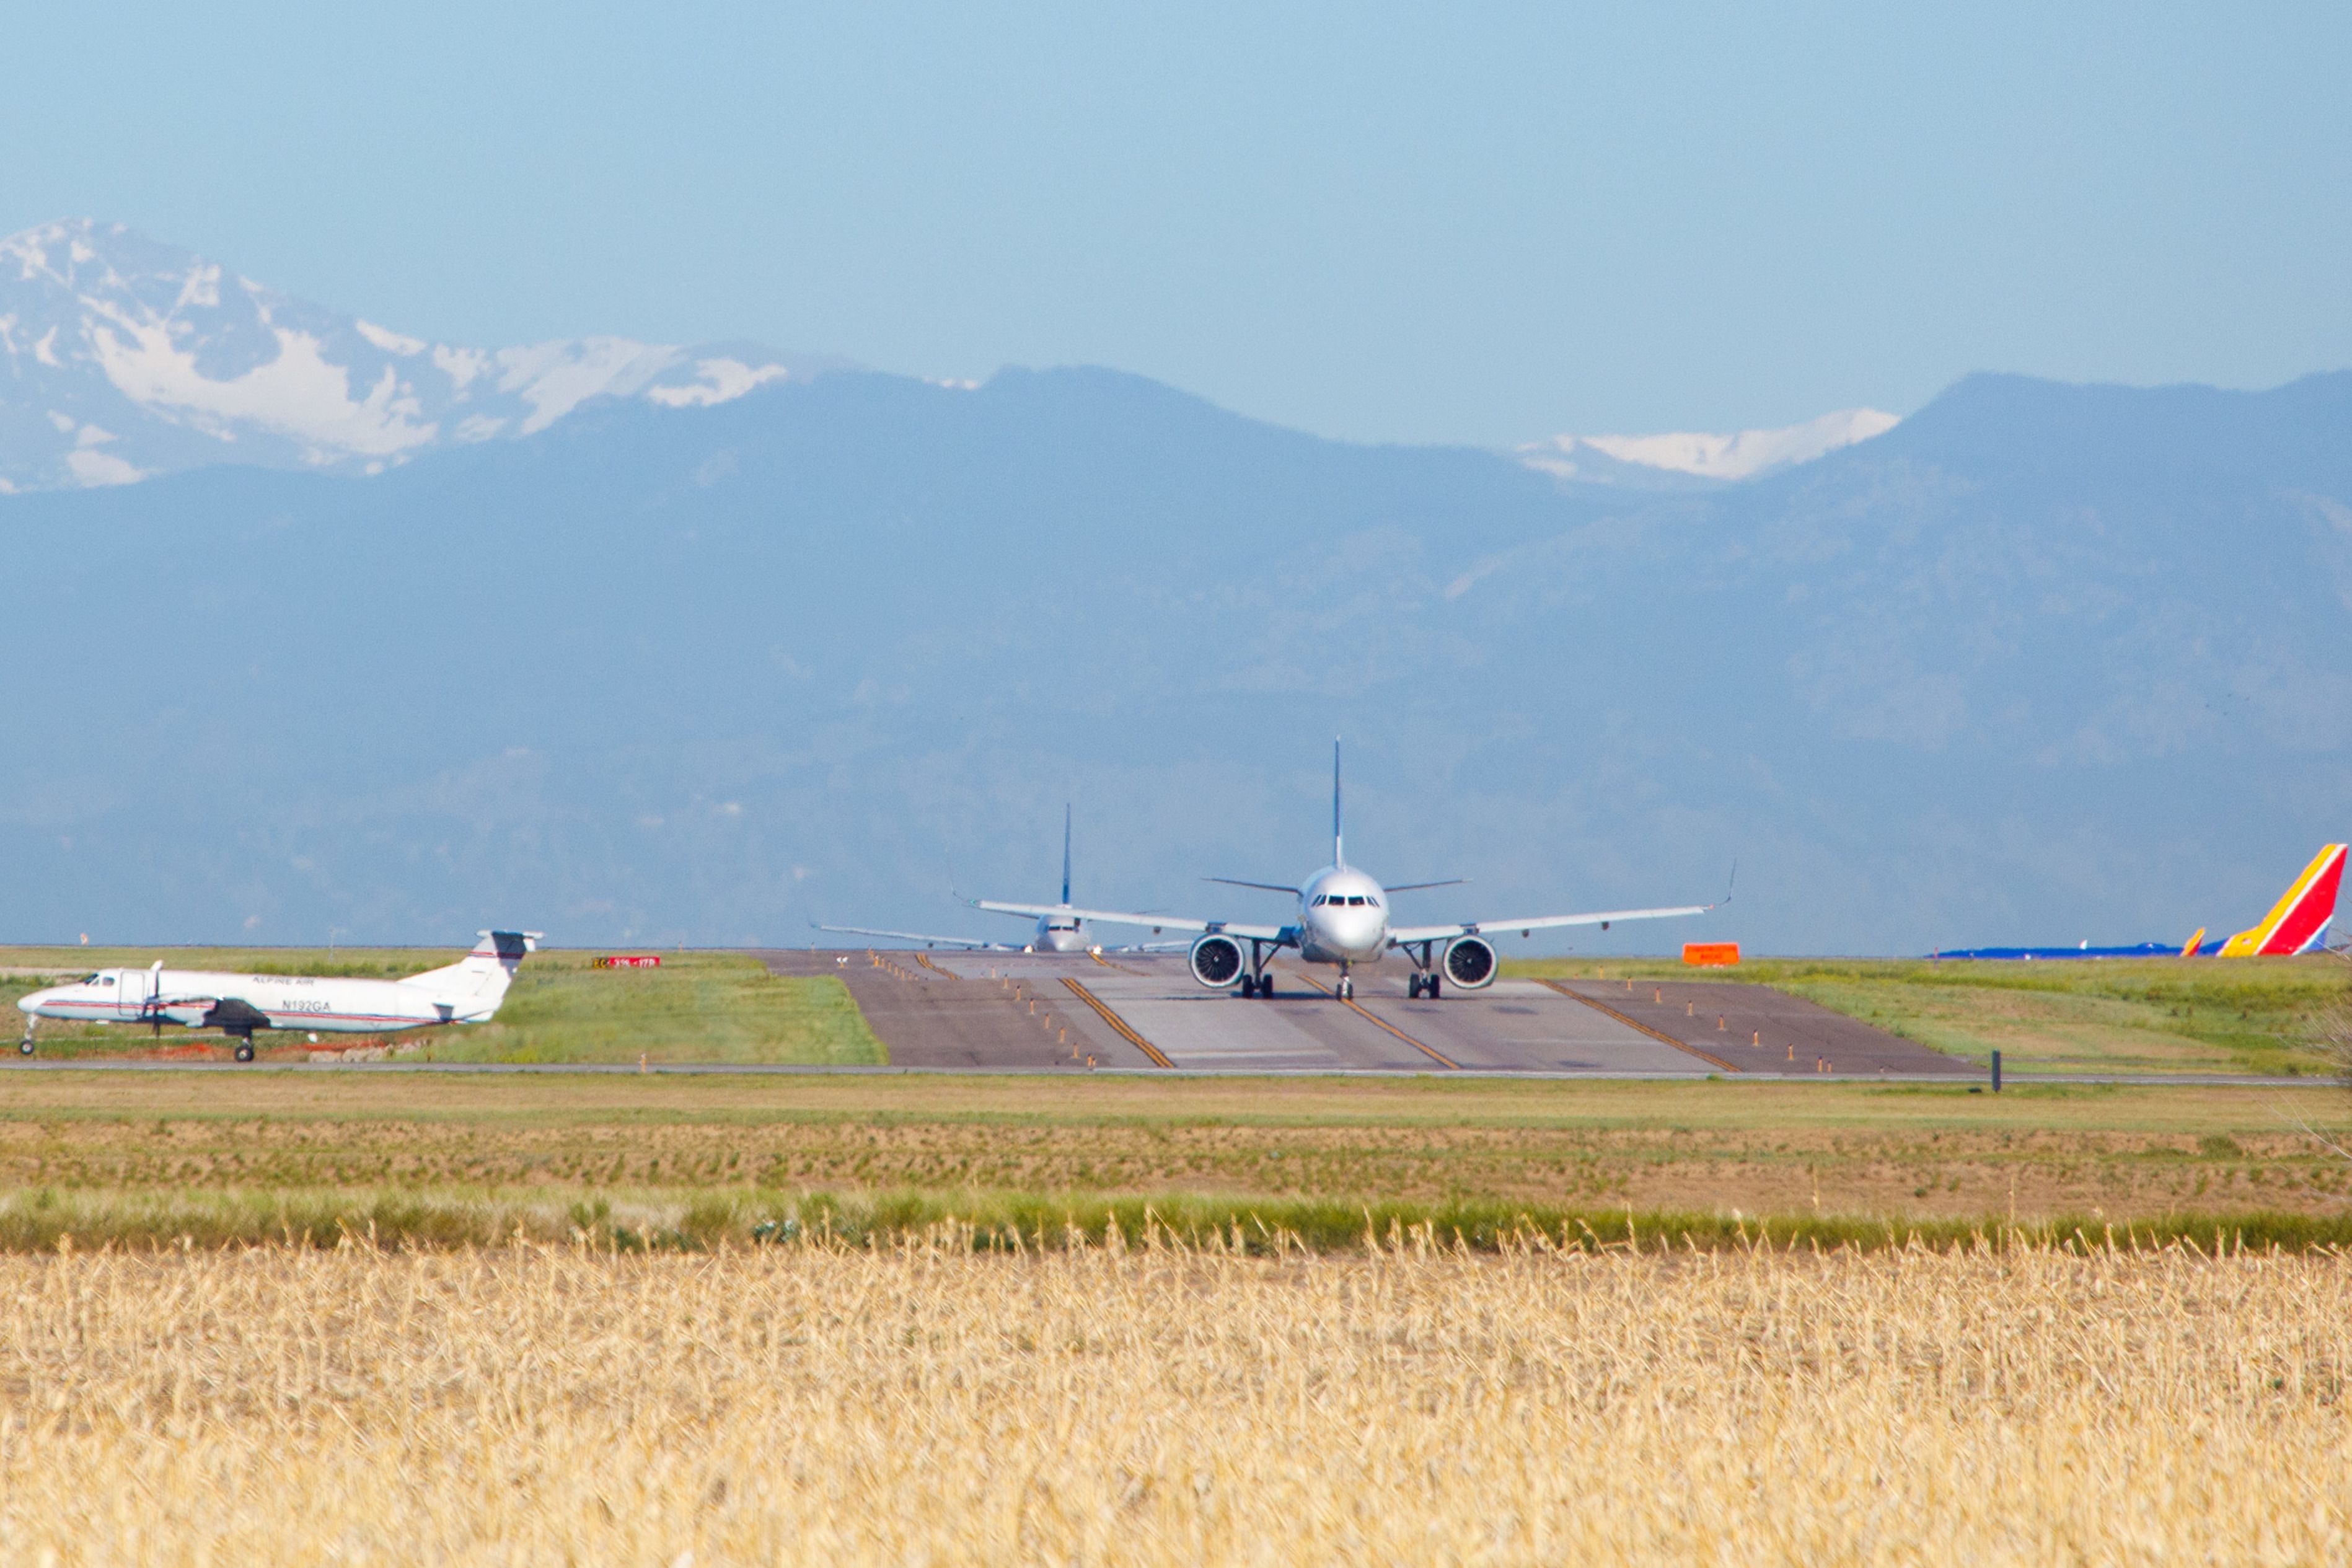 Several aircraft taxiing at Denver International Airport.